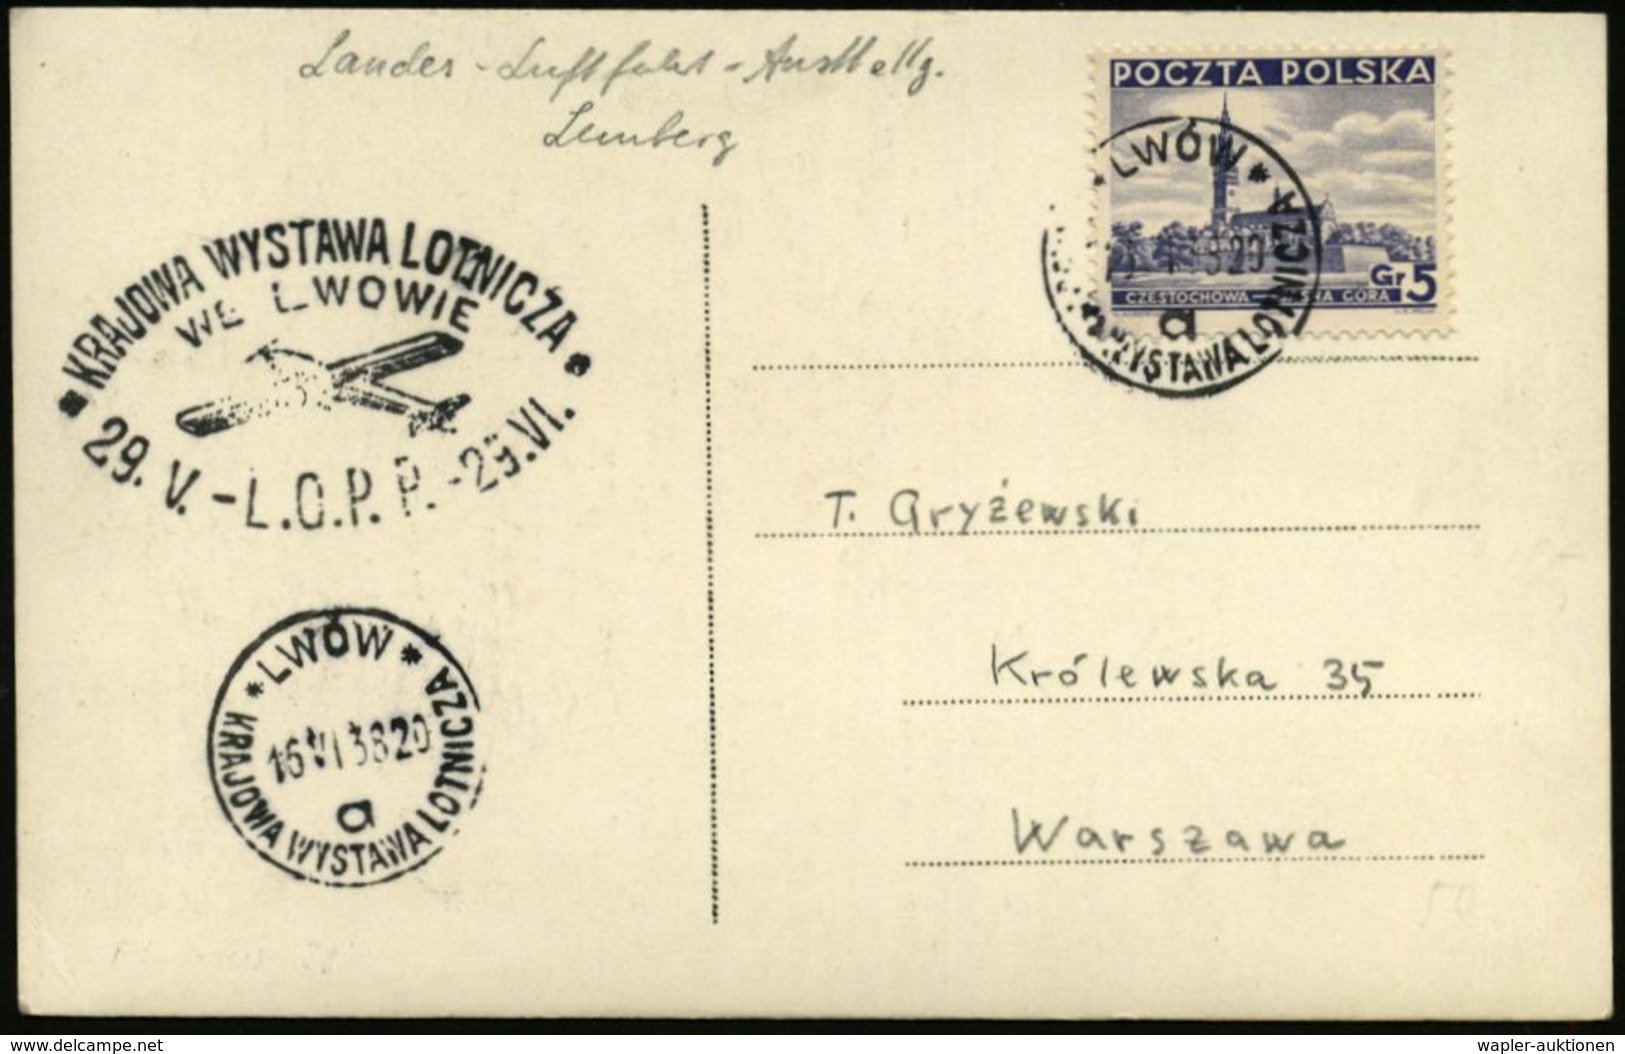 LUFTFAHRT-AUSSTELLUNGEN & KONGRESSE : POLEN 1938 (16.4.) SSt: LWOW/a/KRAJOWA WYSTAWA LOTNICZA (Luftfahrt-Ausst. Lemberg) - Aerei